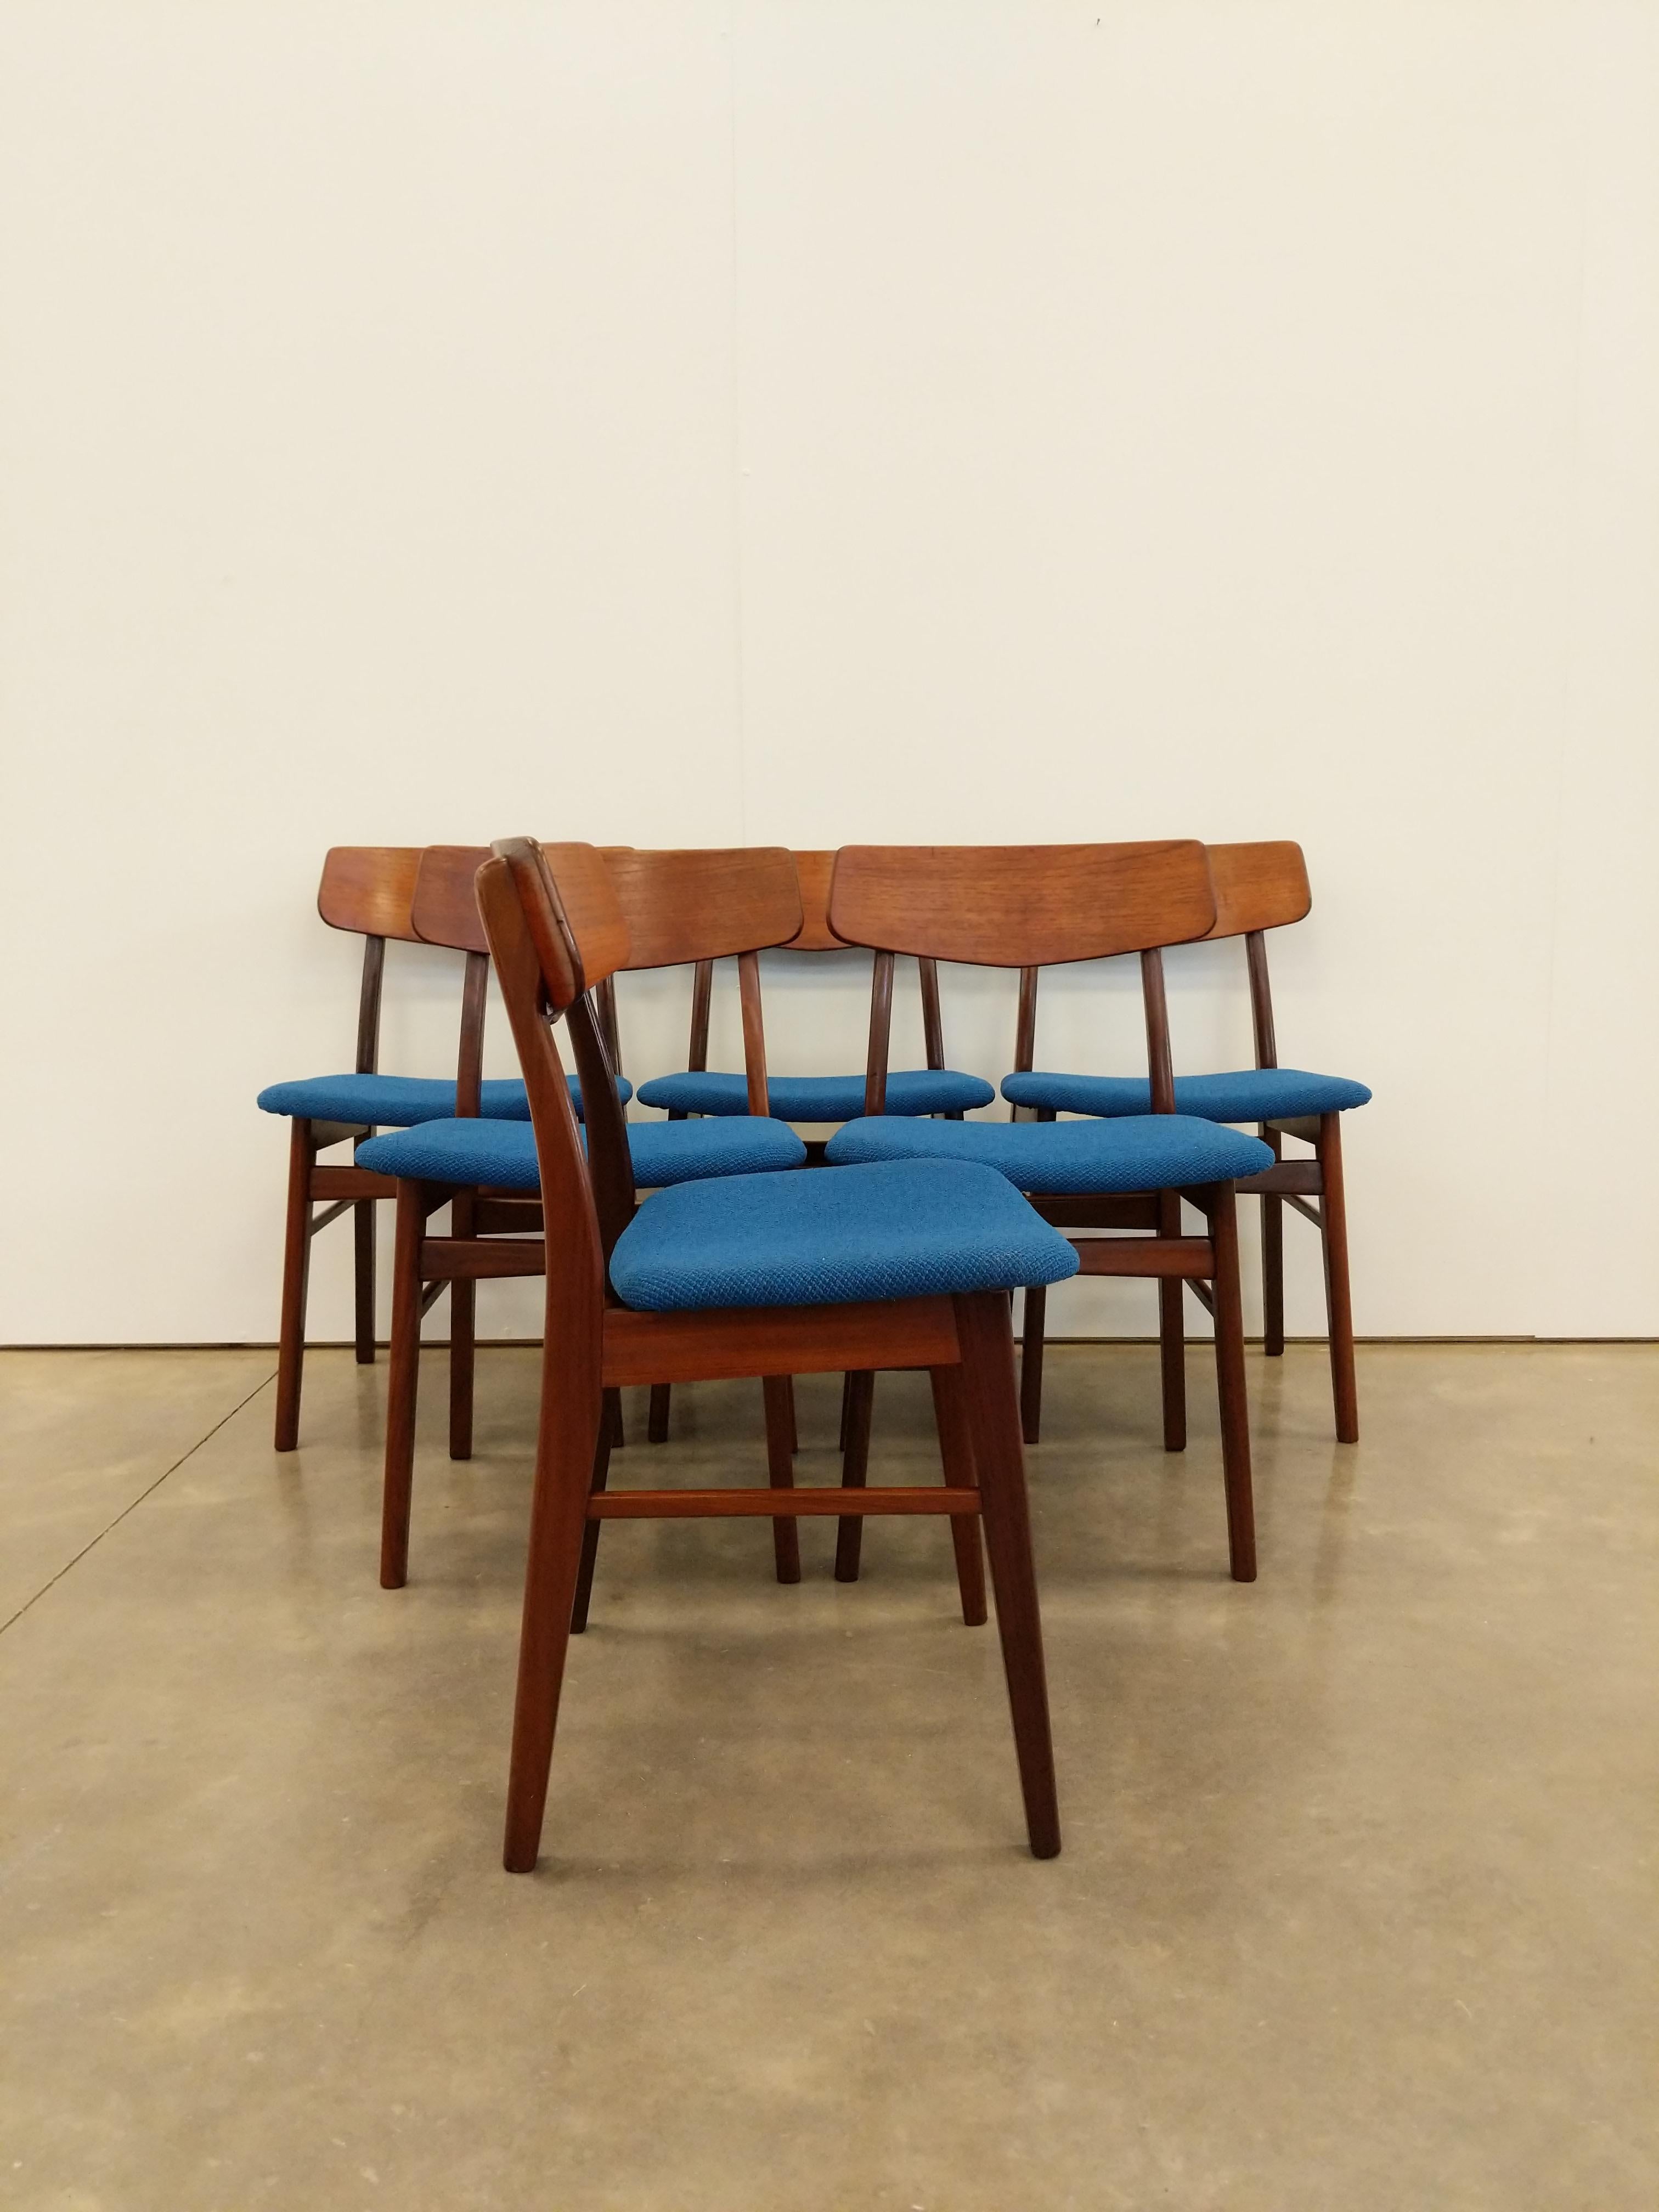 Ensemble de 6 authentiques chaises de salle à manger vintage du milieu du siècle, de style danois / The Modern Scandinavian.

Cet ensemble est en excellent état de rénovation, avec une sellerie Condit neuve et peu de signes d'usure liés à l'âge